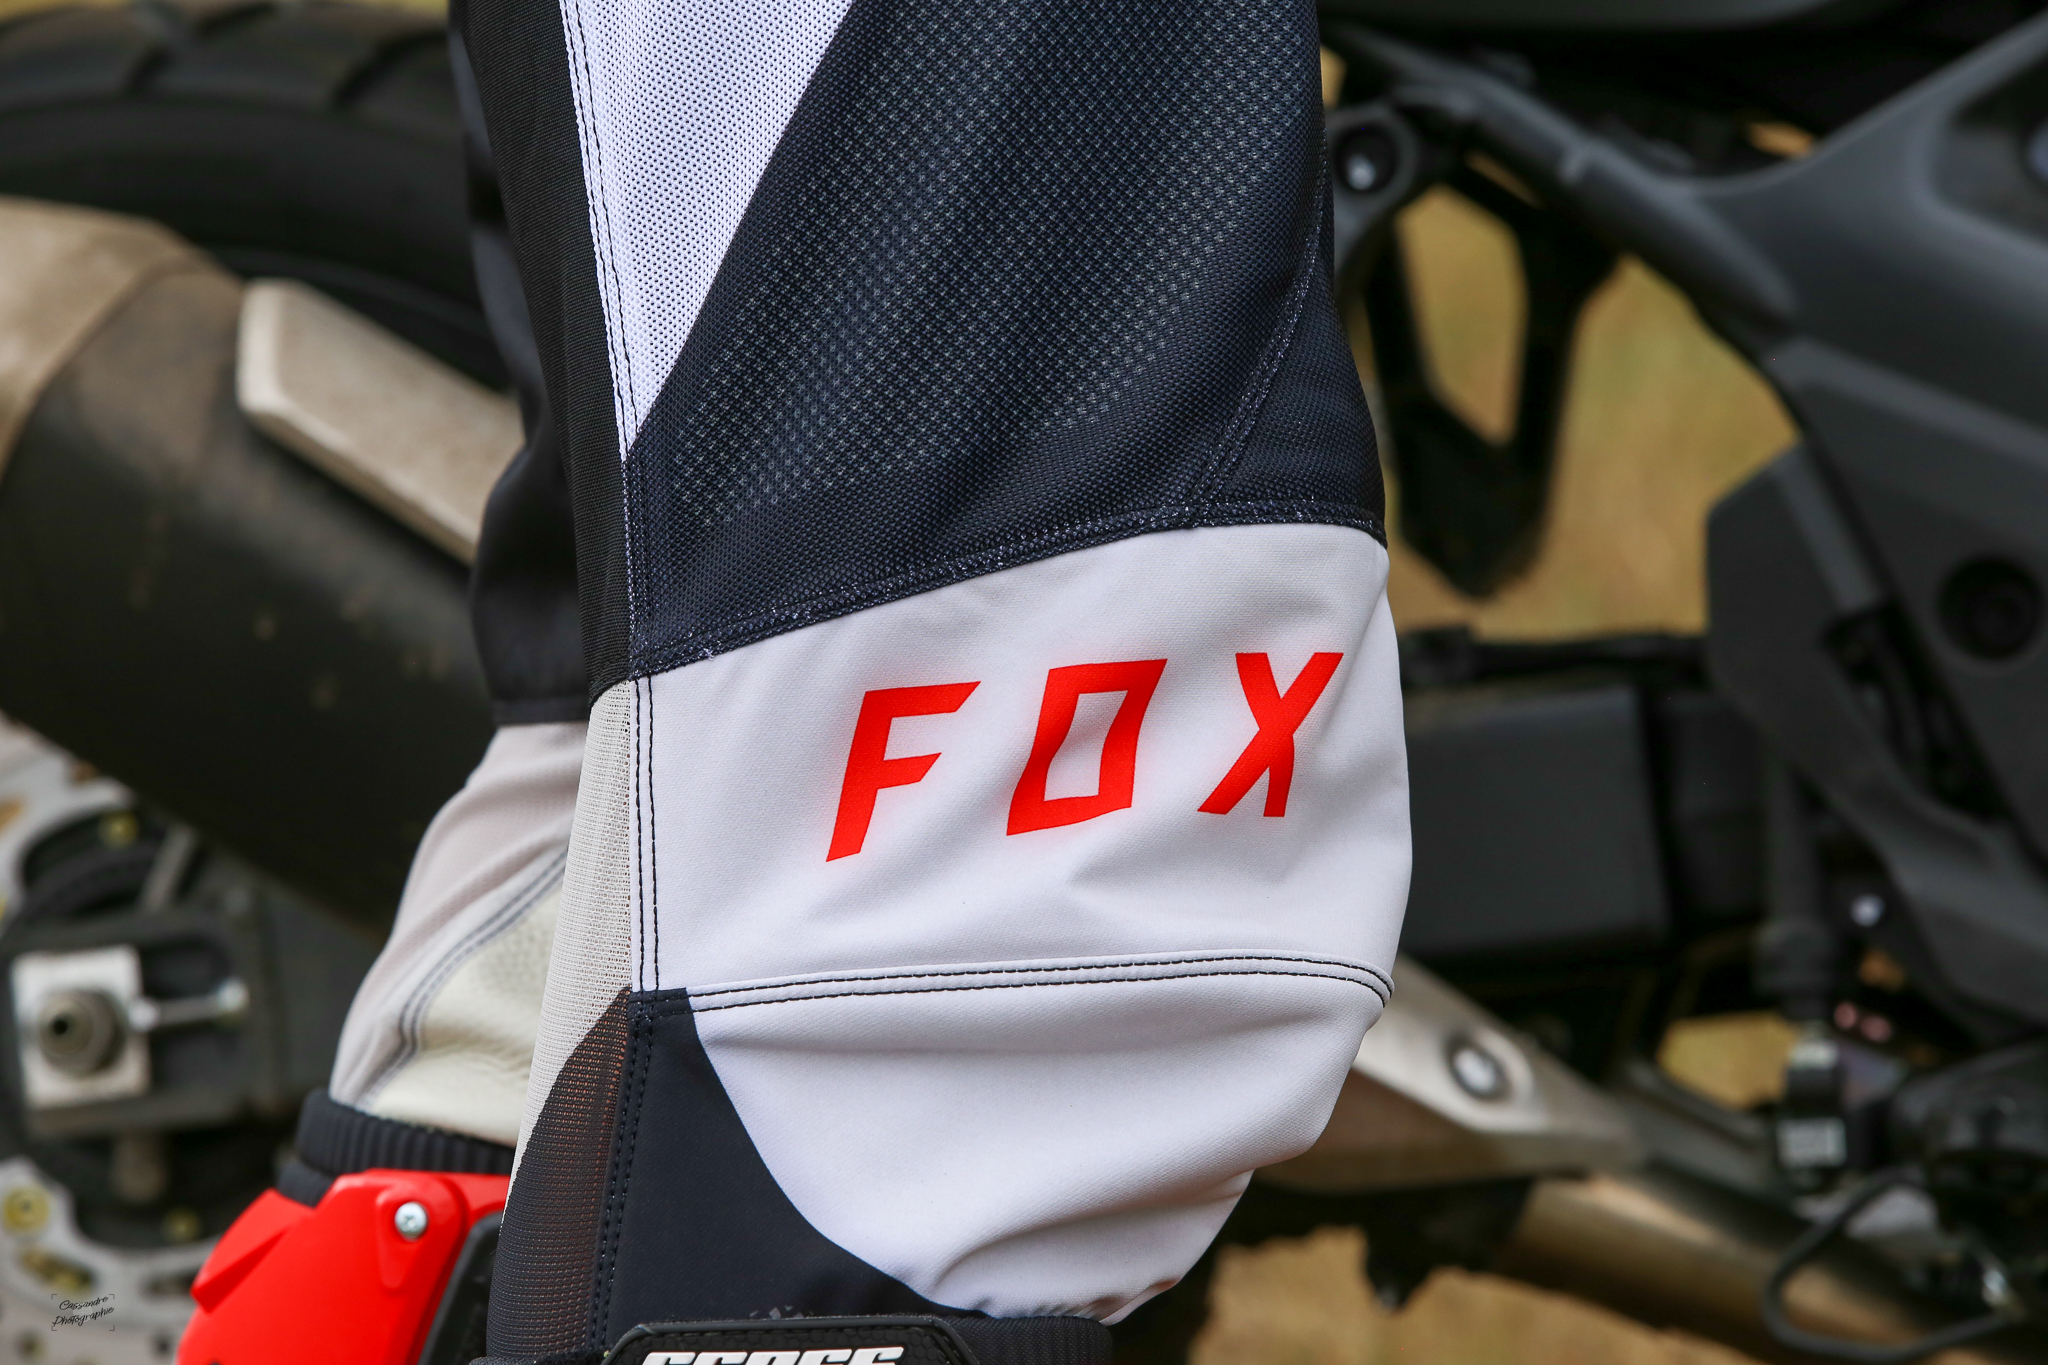 Fox marque dédiée à la pratique du off road et de la moto cross